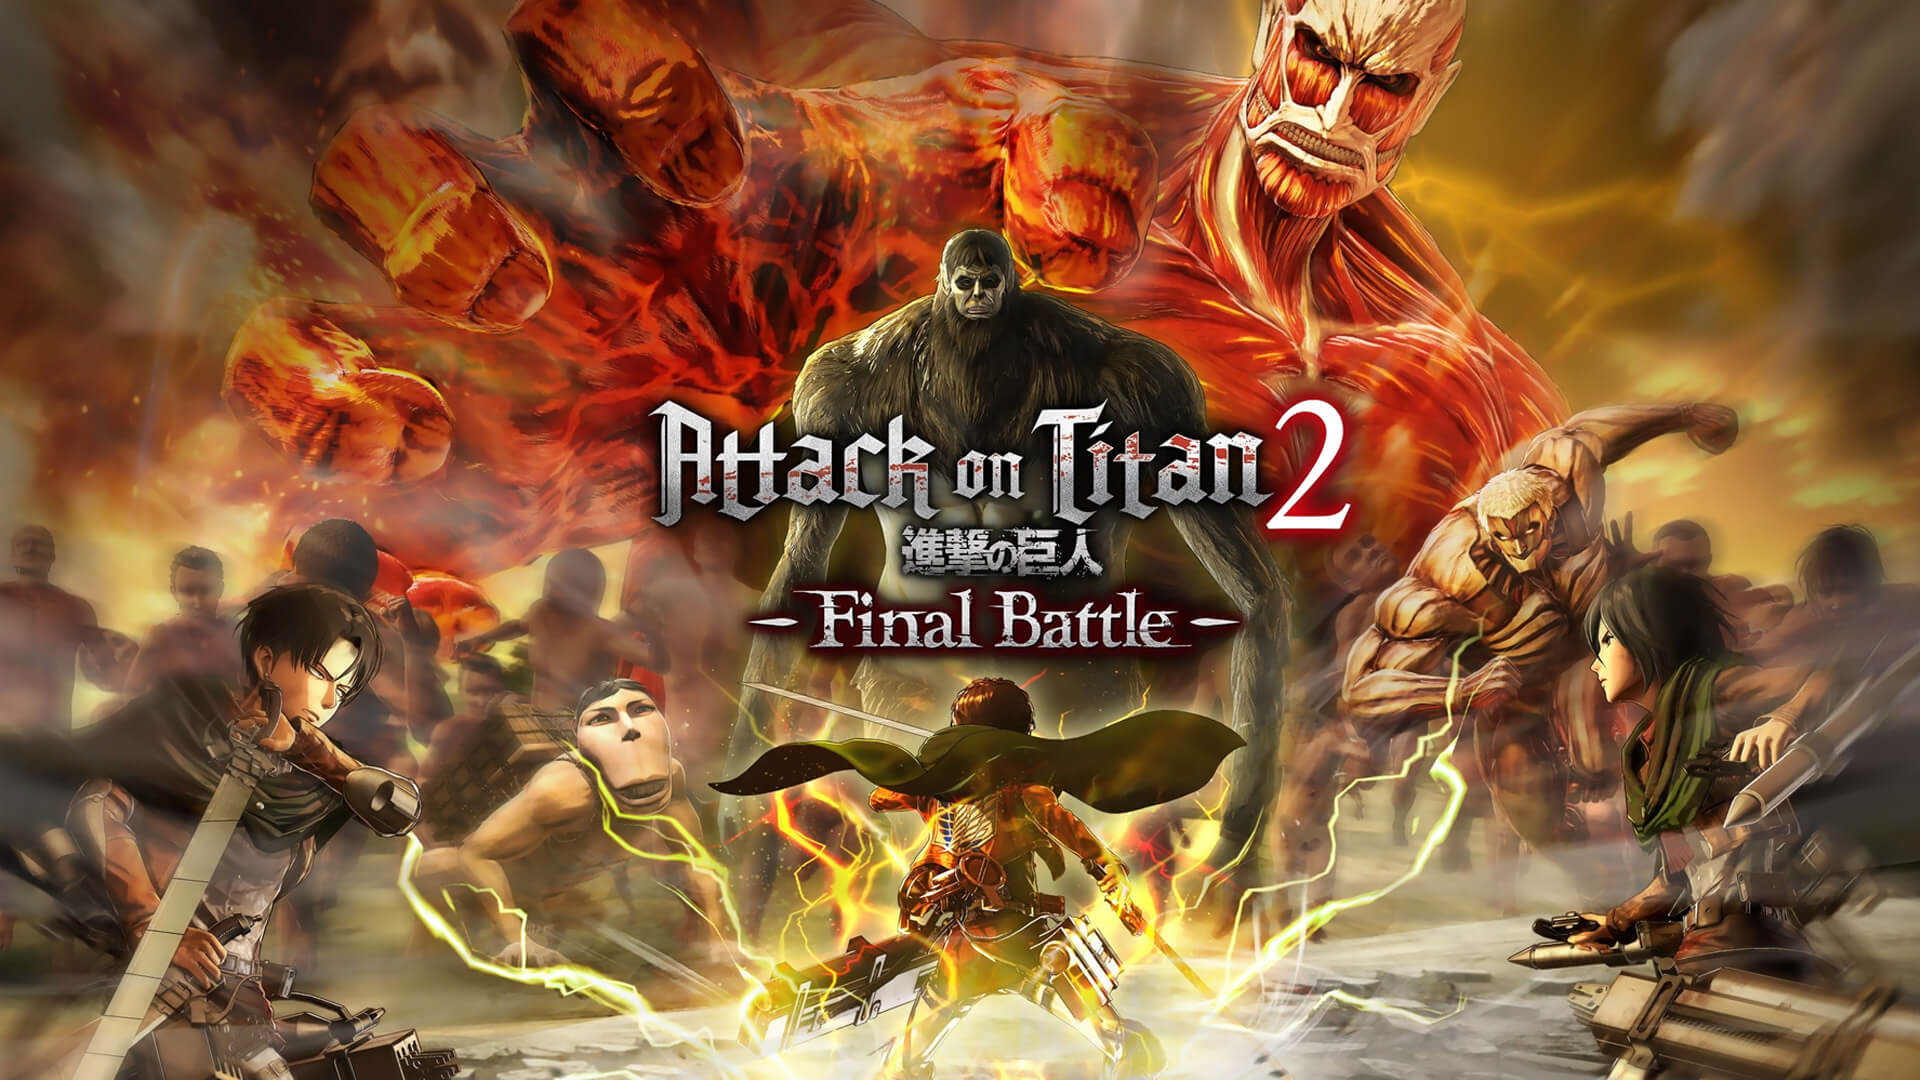 attack on titan game pc